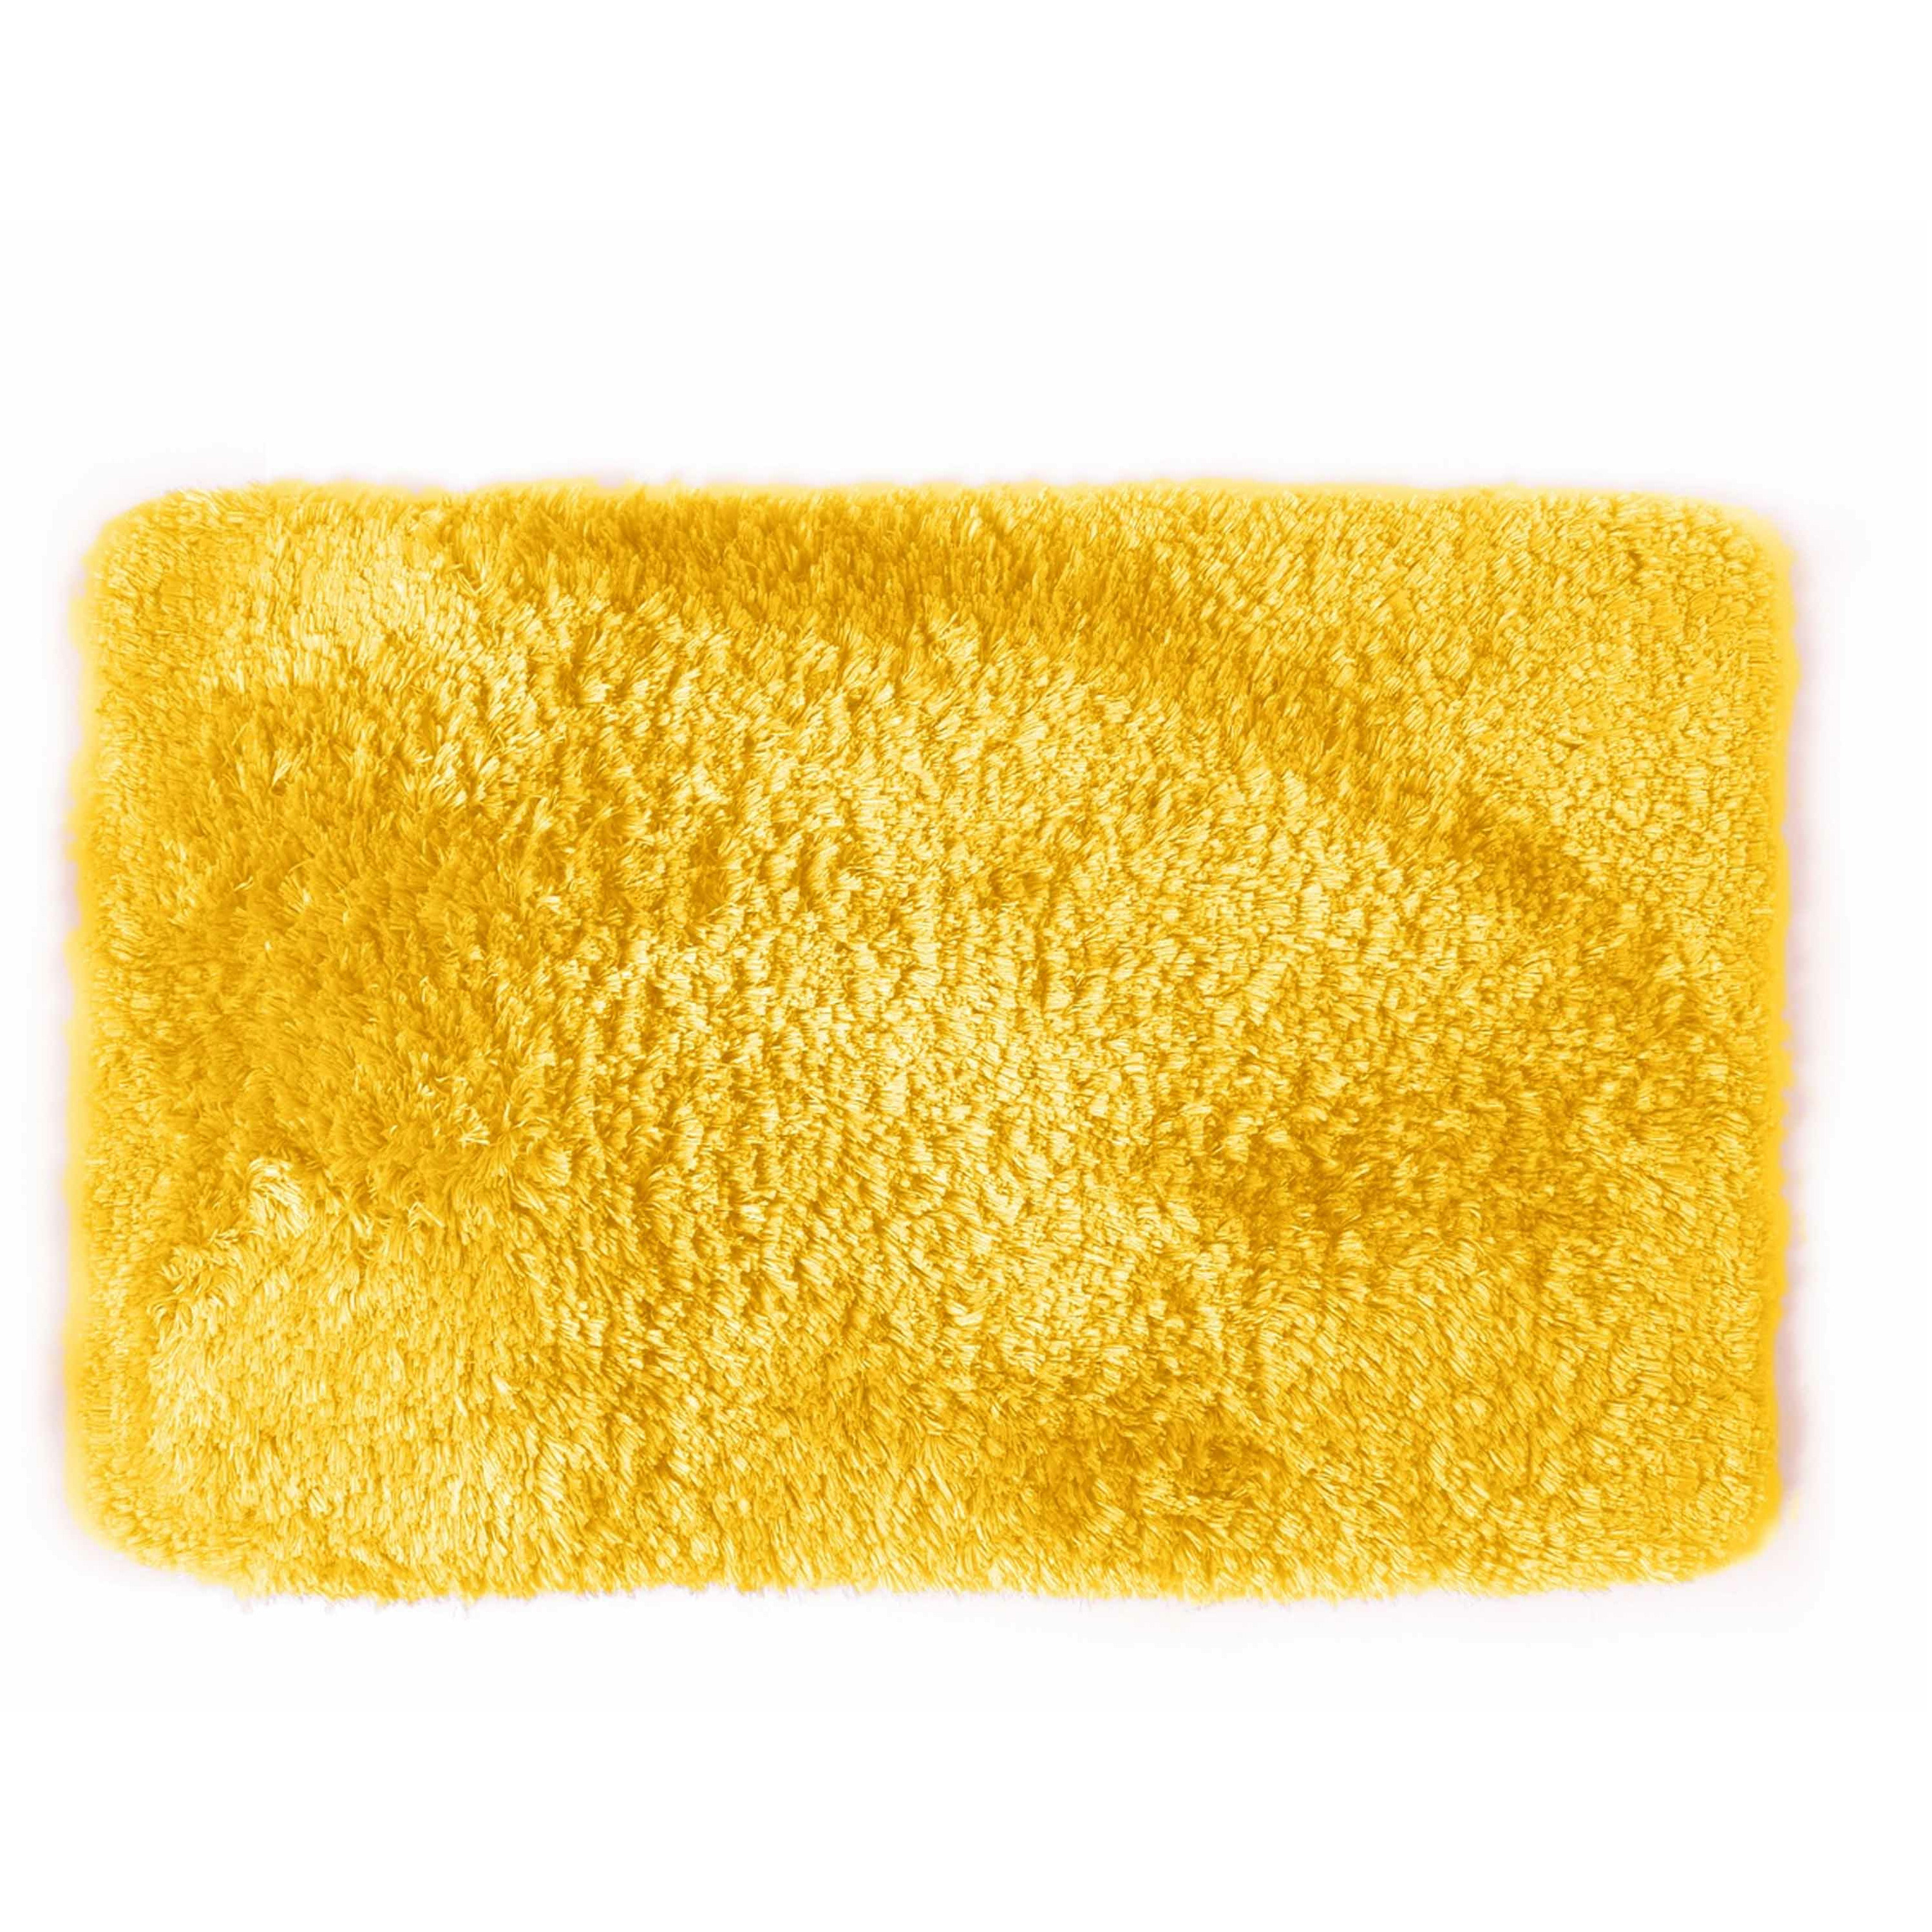 Spirella badkamer vloer kleedje-badmat tapijt hoogpolig luxe uitvoering geel 40 x 60 cm